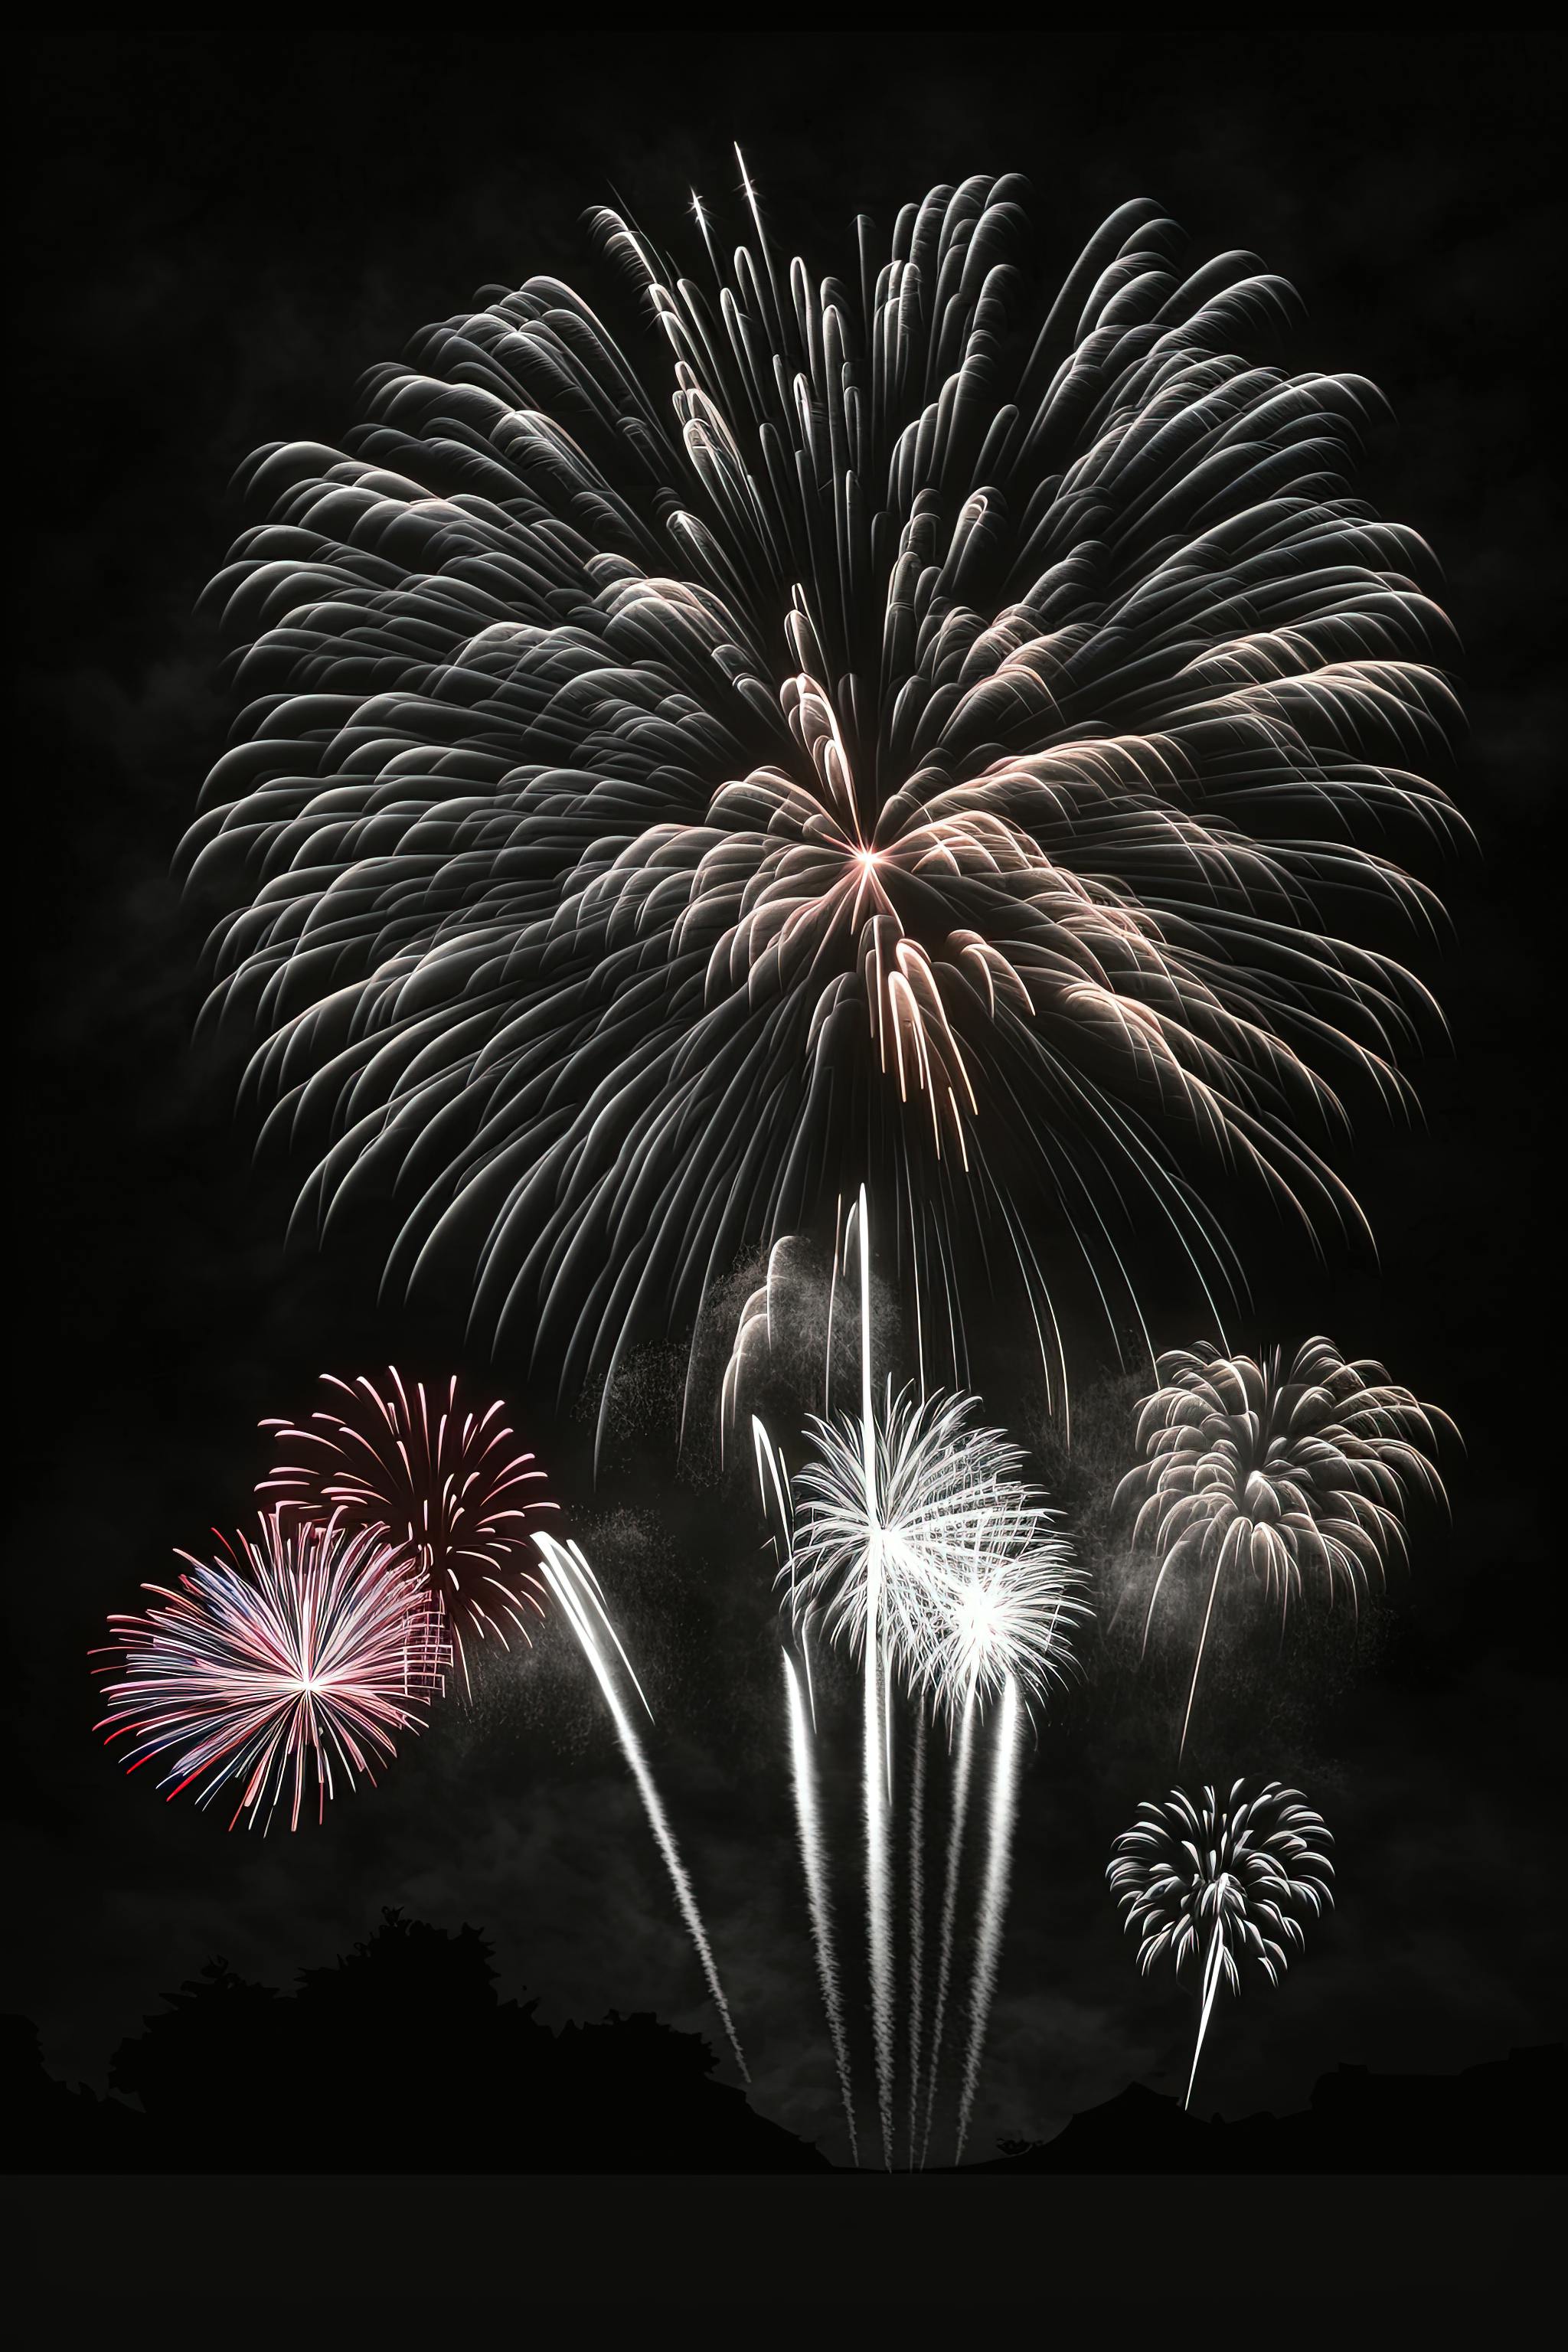 Fuegos artificiales de celebración: fotografía de stock © Argument